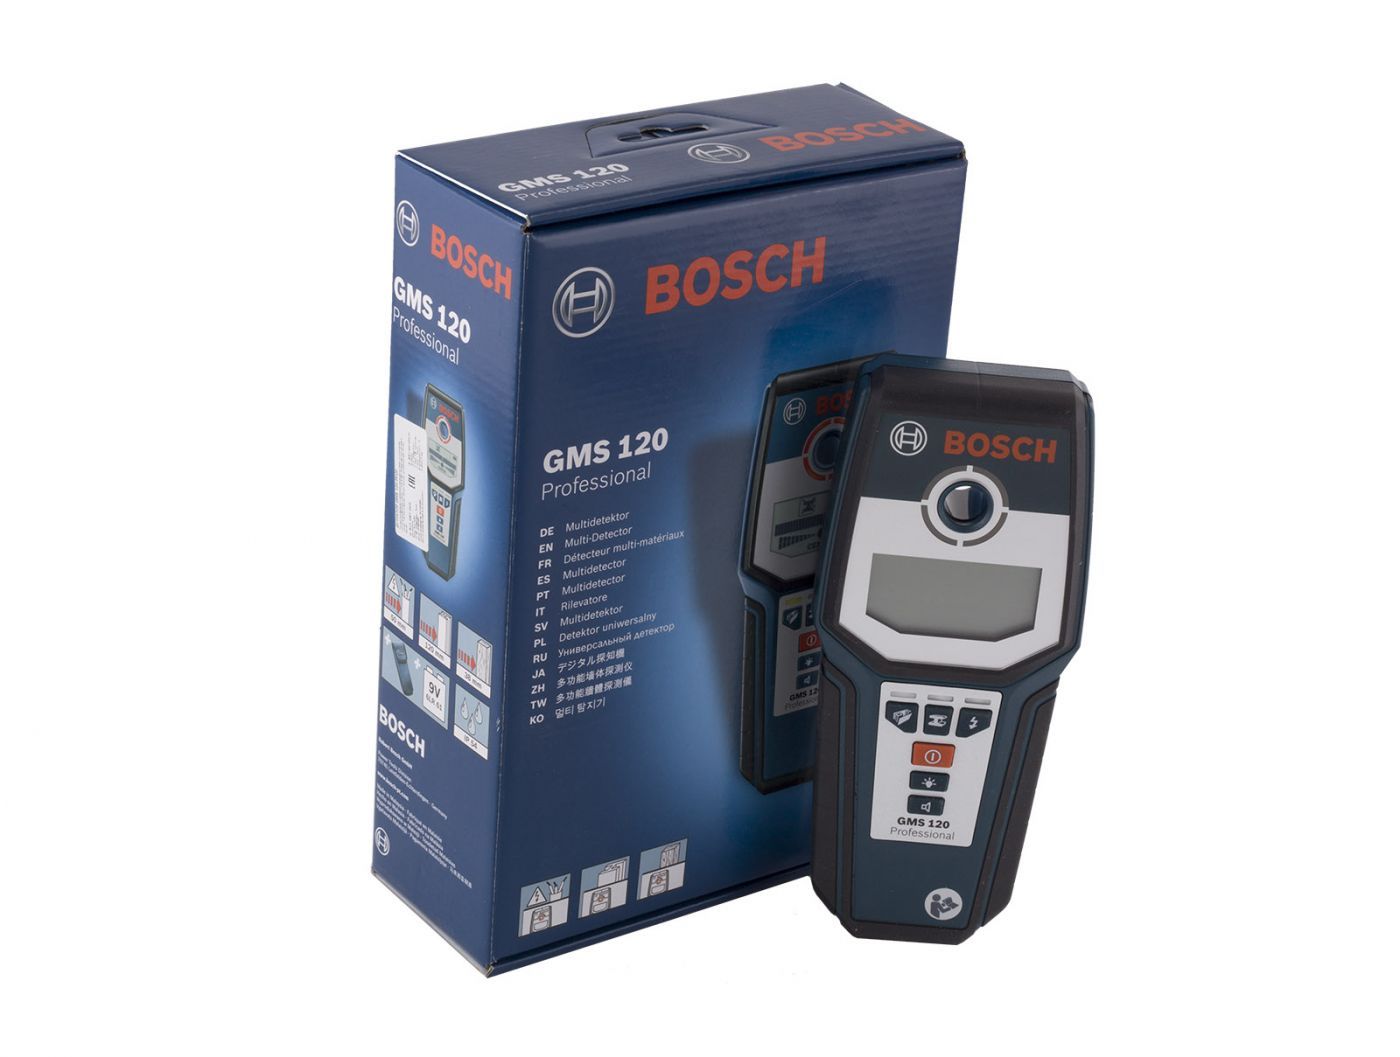 Детектор бош. Детектор скрытой проводки Bosch GMS. Bosch GMS 120 professional. Детектор Bosch GMS 120 Prof 0.601.081.000. Bosch professional gms120prof.